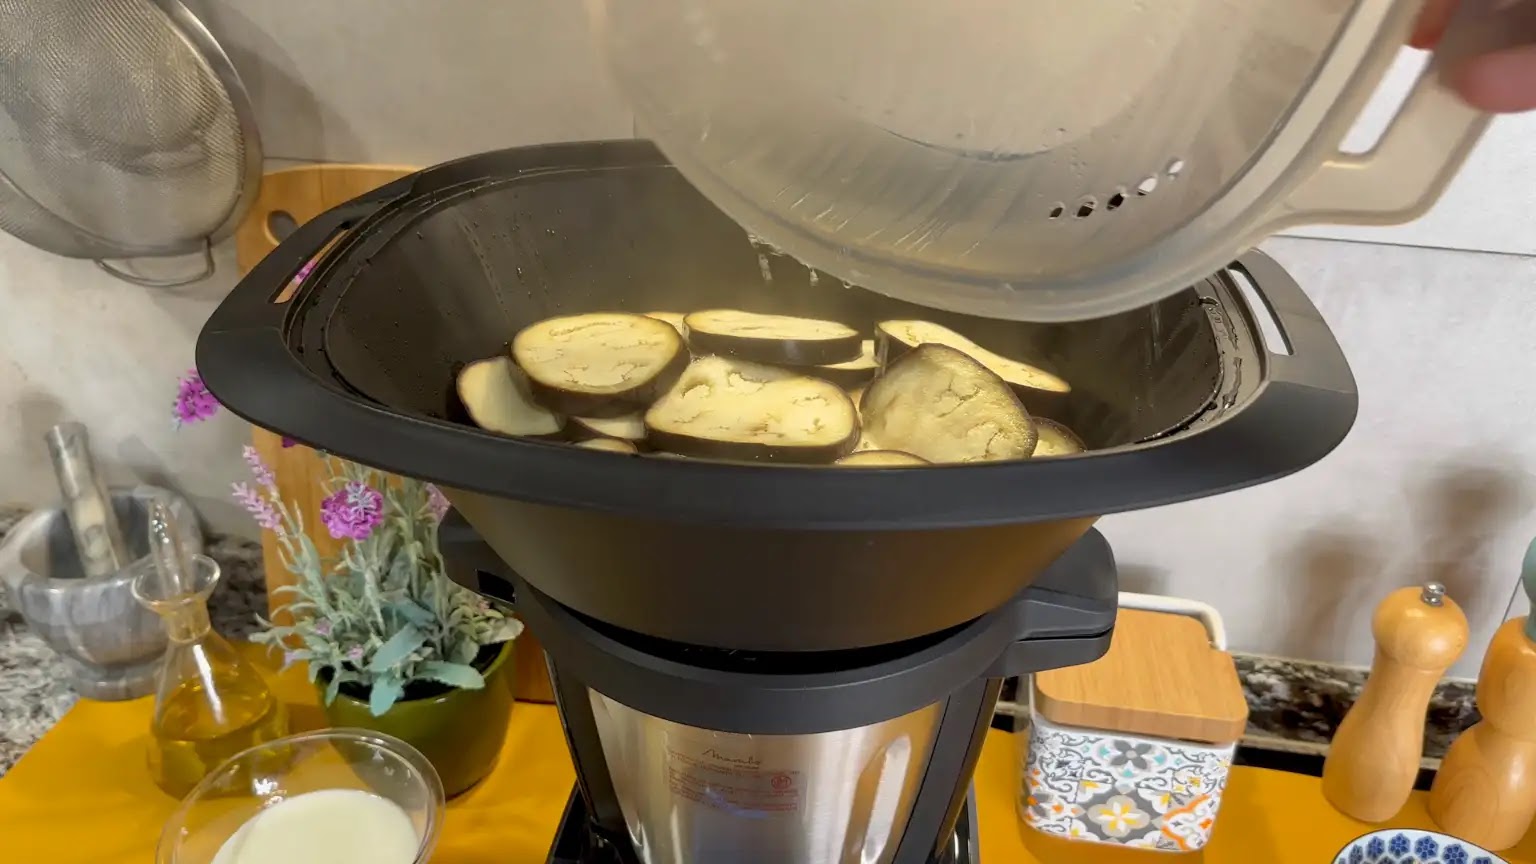 Ojito con la Mambo Touch con jarra Habana, probablemente sea el robot de  cocina más completo con recetas guiadas - Dos Rombos en …